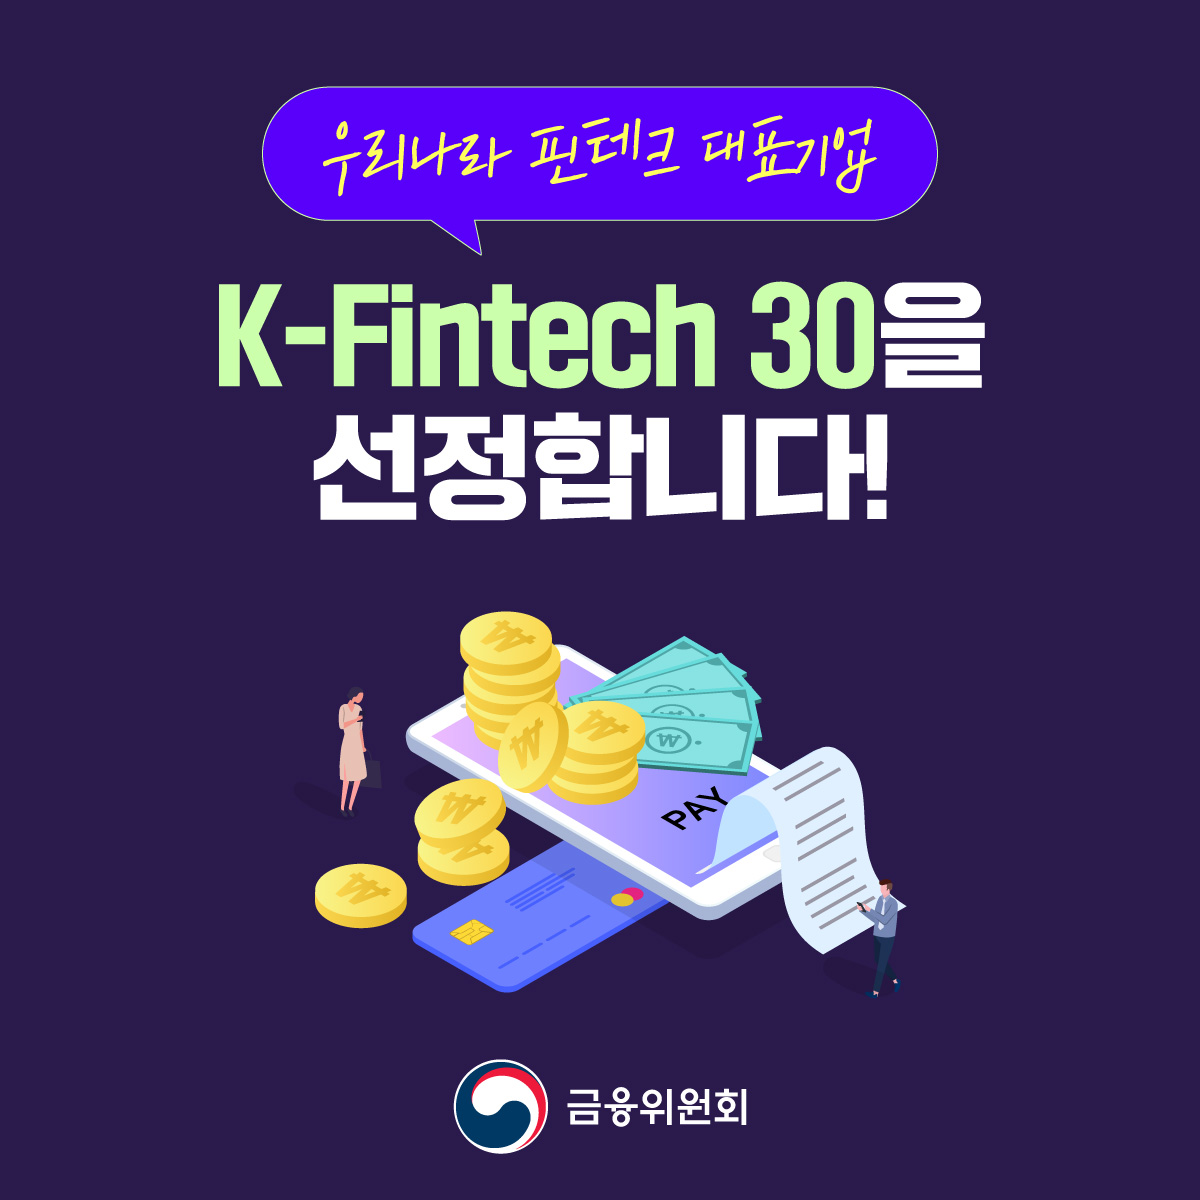 우리나라 핀테크 대표기업. K-Fintech 30을 선정합니다!